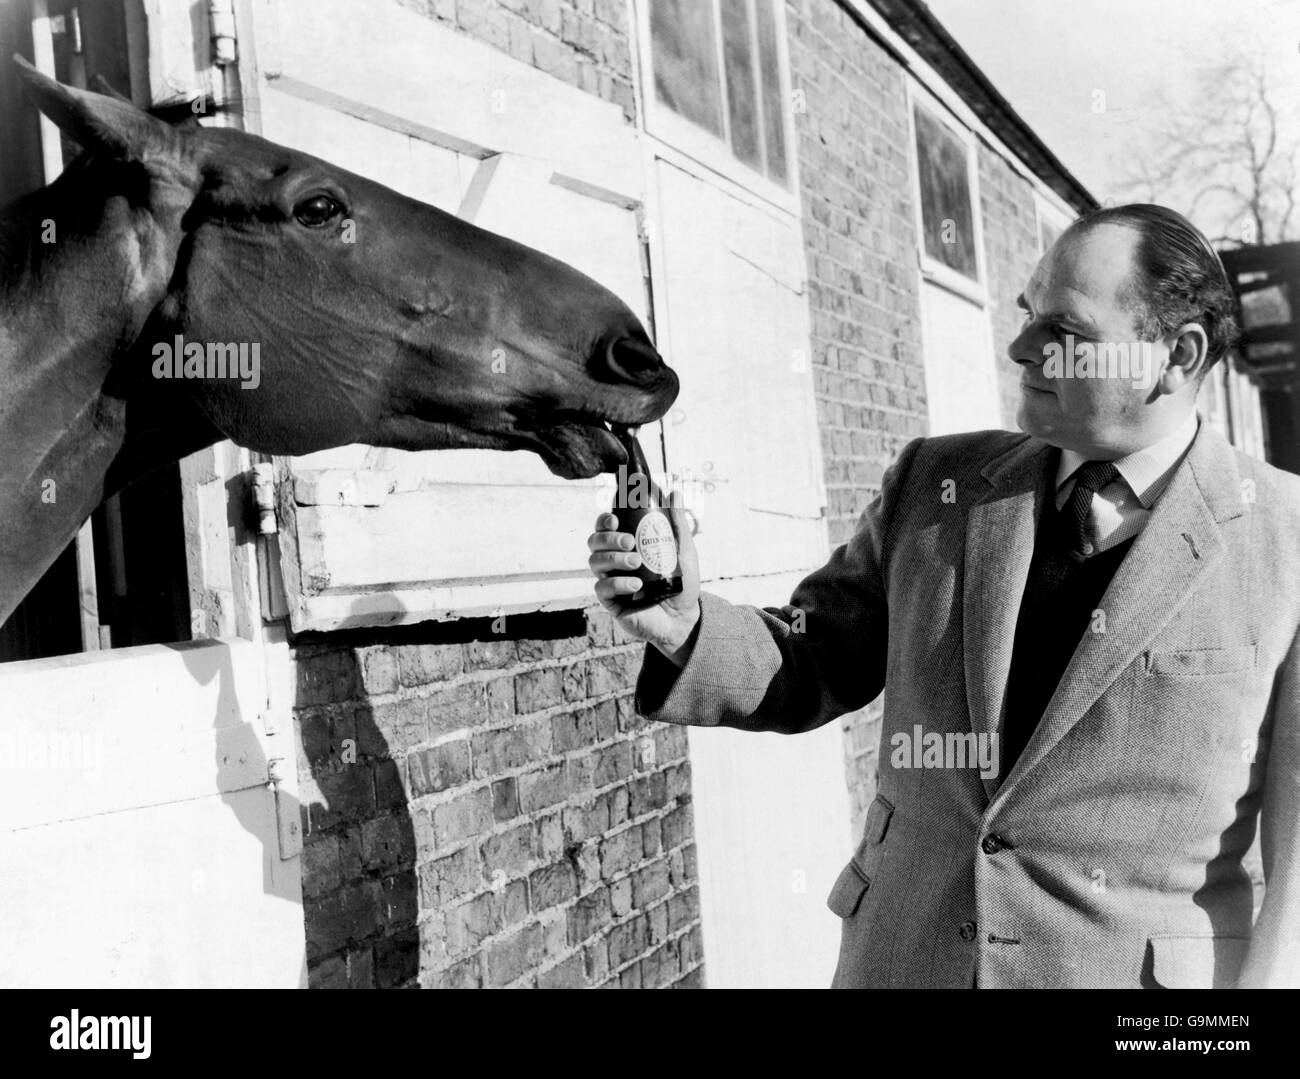 Arkle schlürft auf einer seiner zweimal täglich abgefüllten Guinness-Flaschen, die ihm Henry Hyde (r), Geschäftsführer von Kempton Park, zur Verfügung gestellt hat Stockfoto